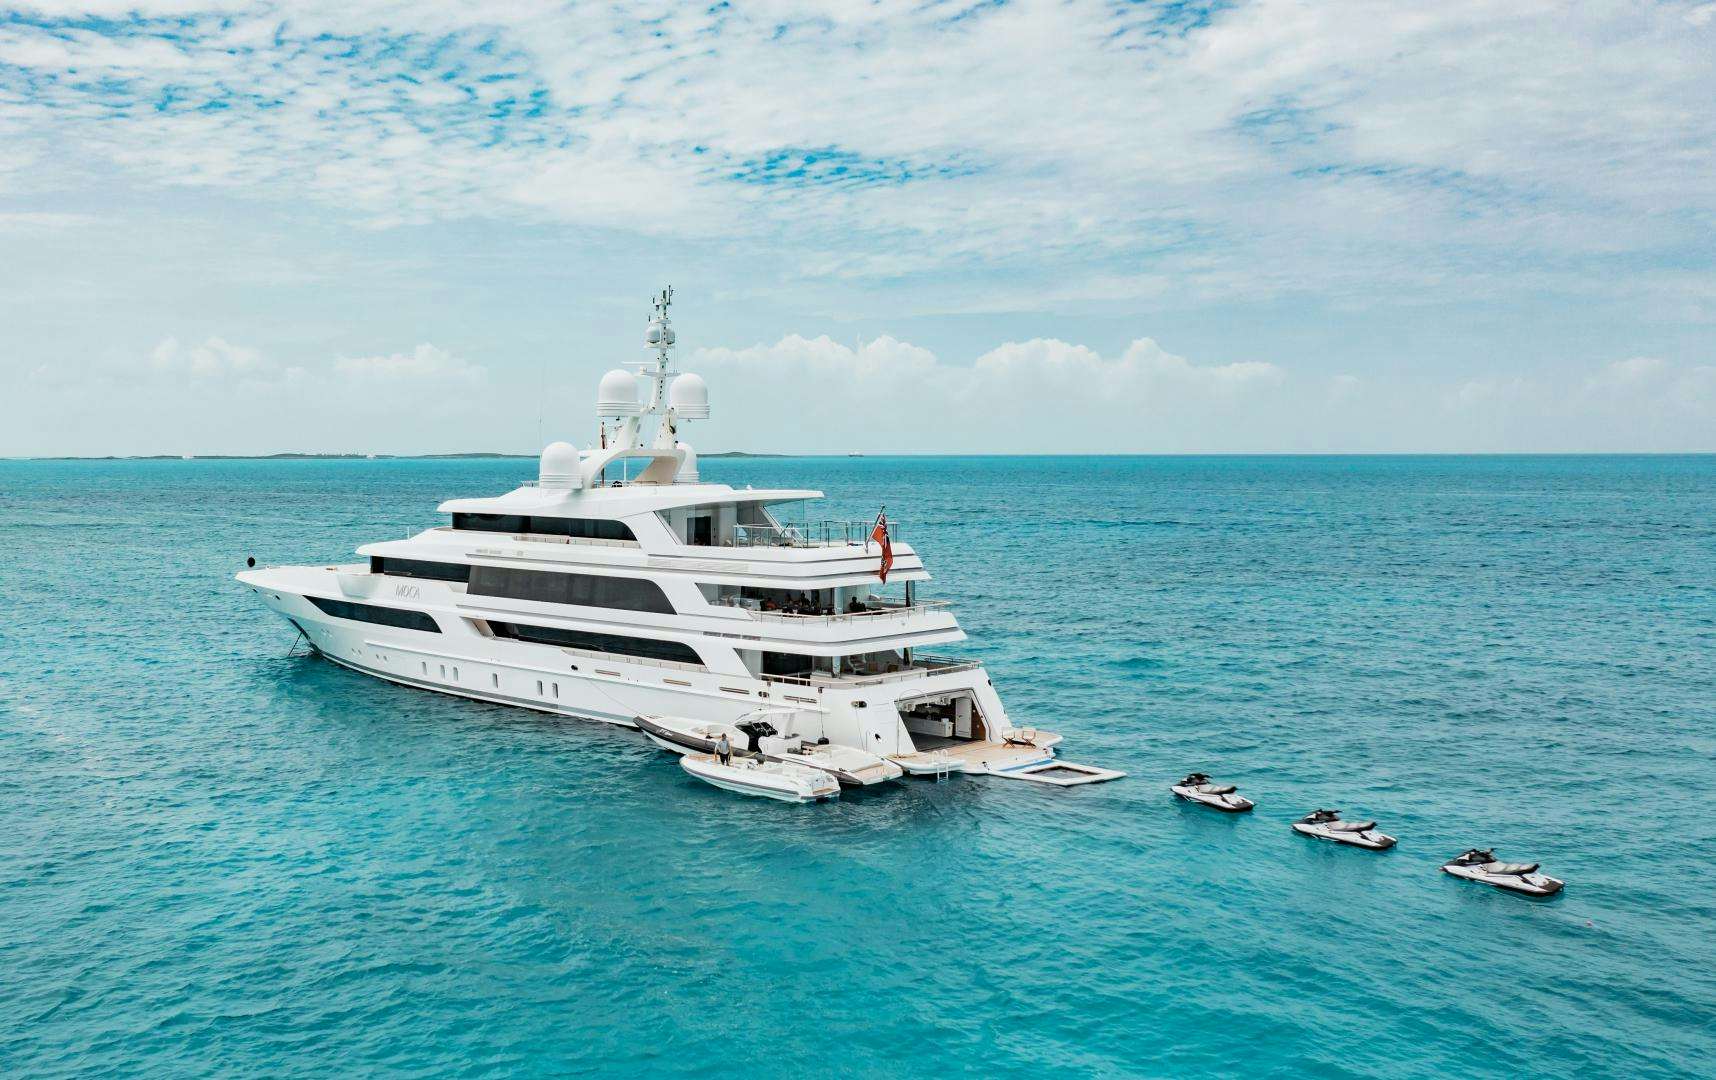 MOCA Yacht for Sale in Cayman Islands | 208' 4" (63.5m) 2016 Benetti | N&J